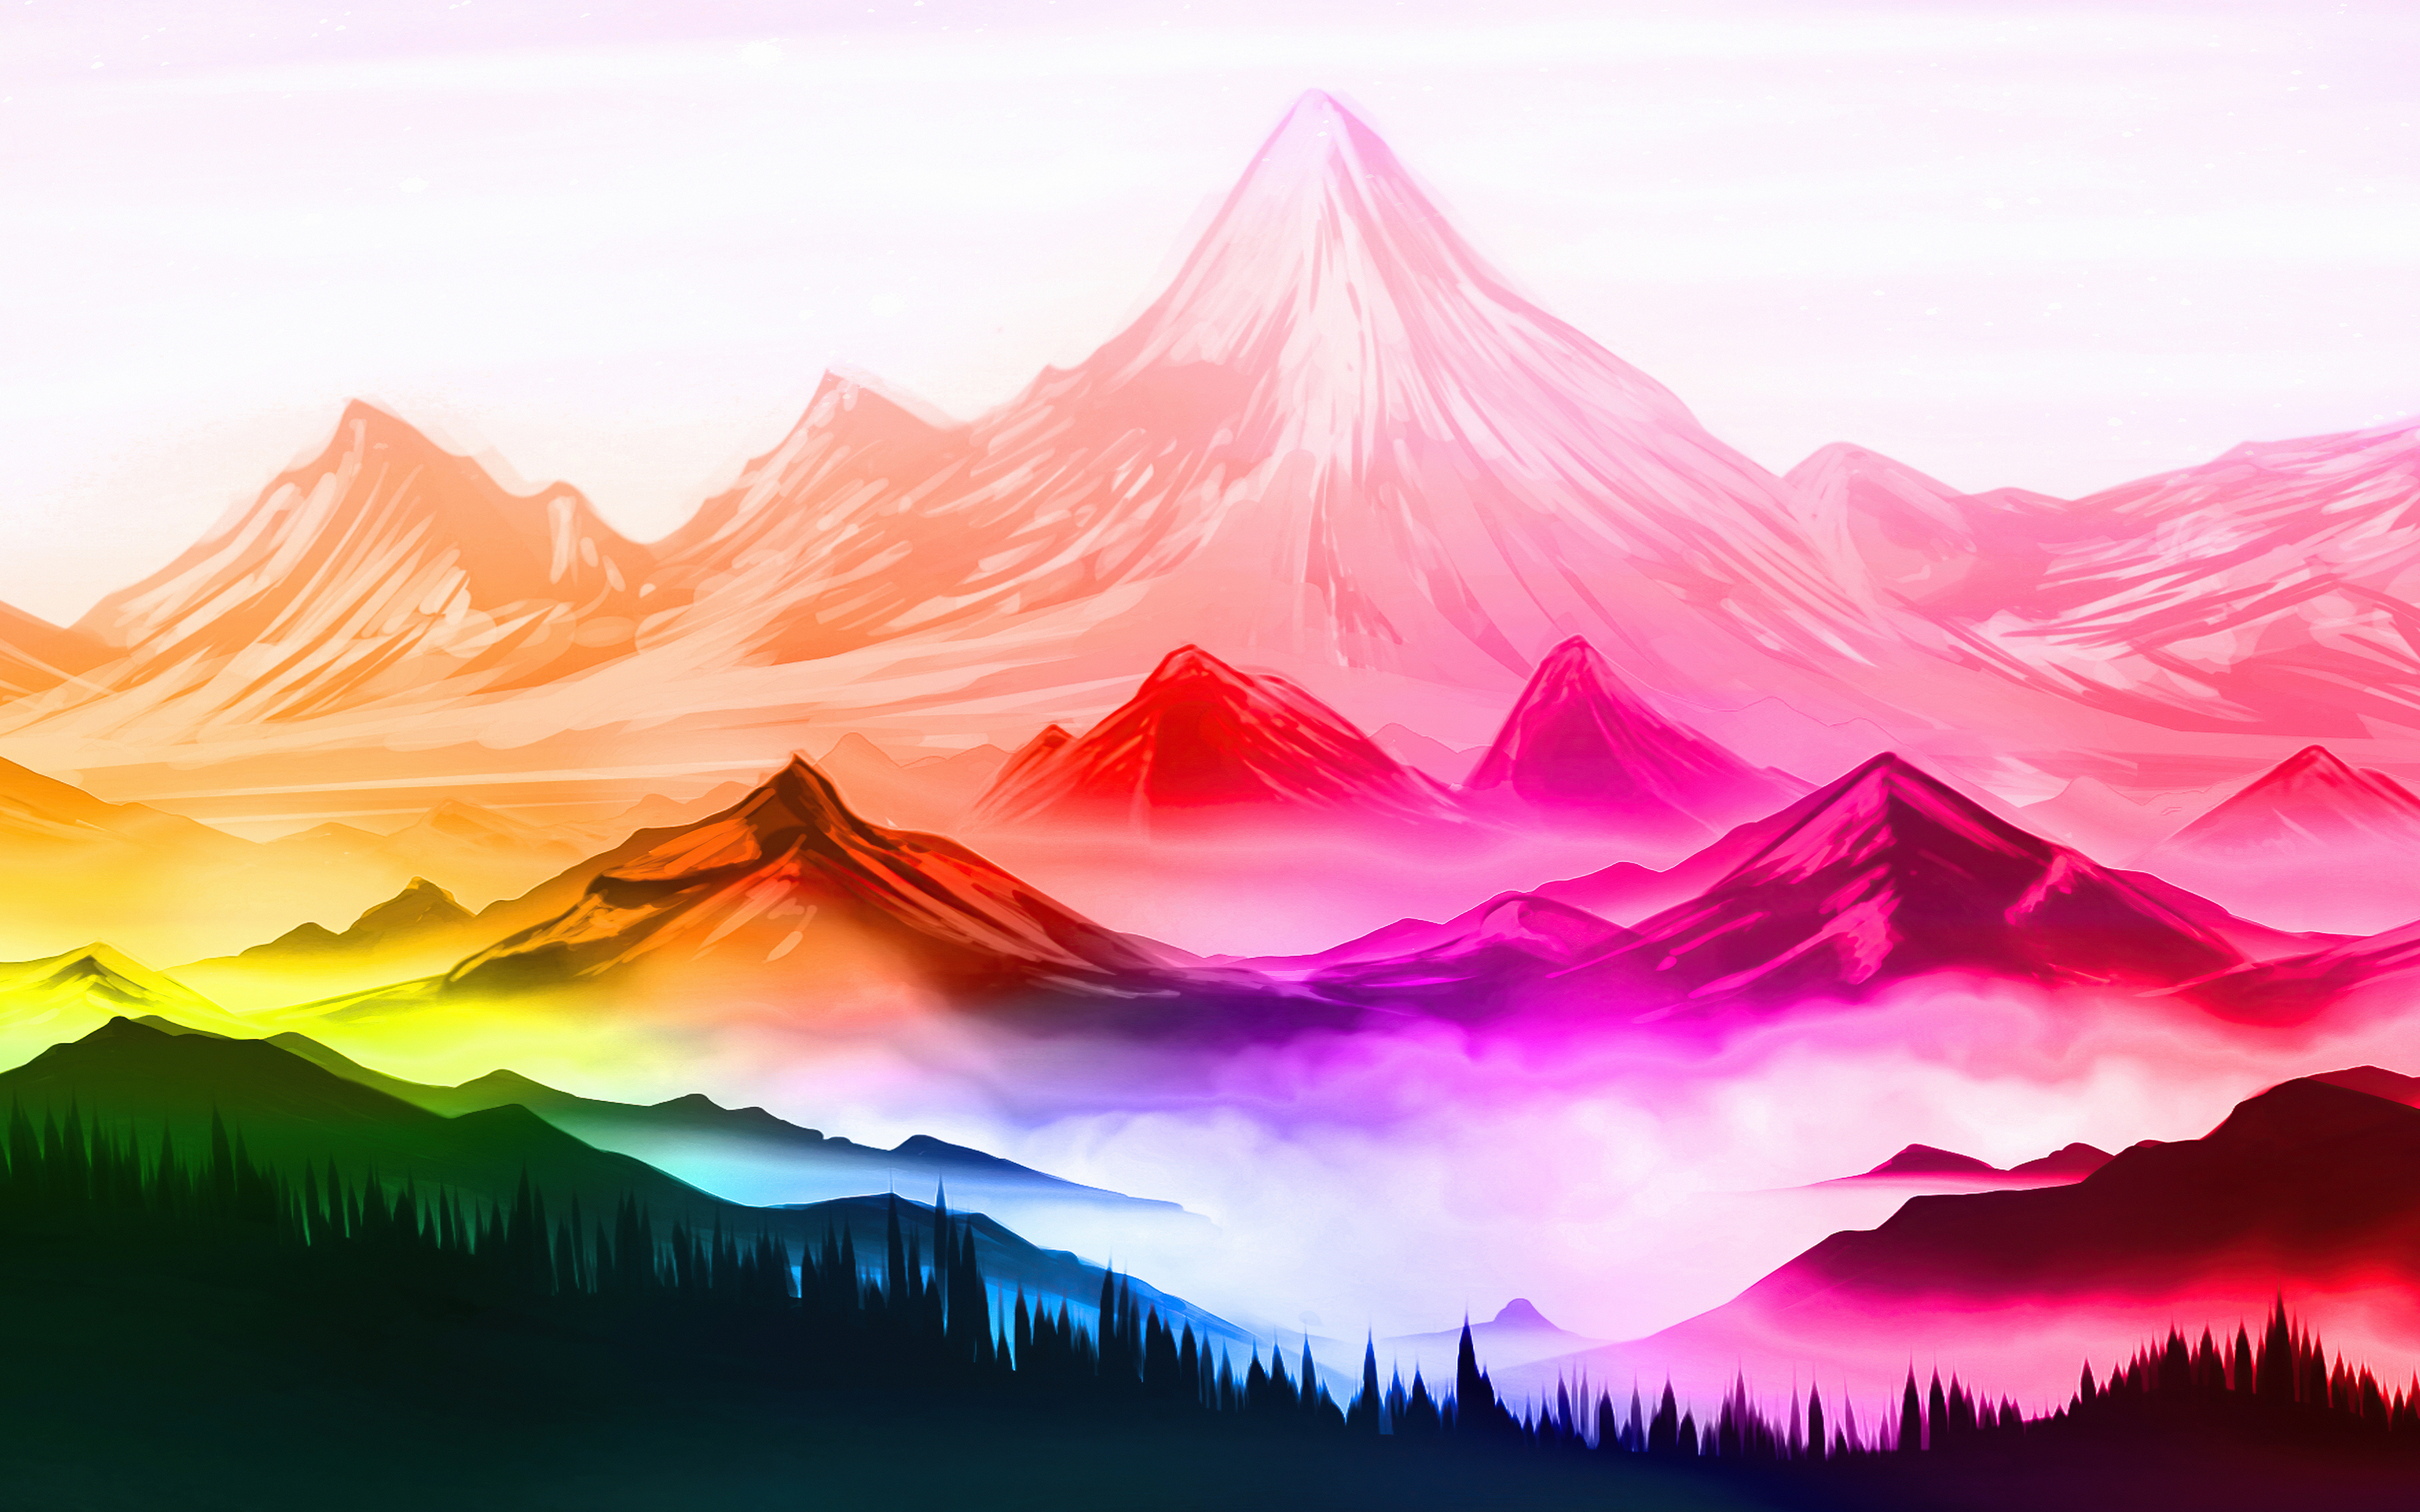 Mountains Digital Art Wallpapers